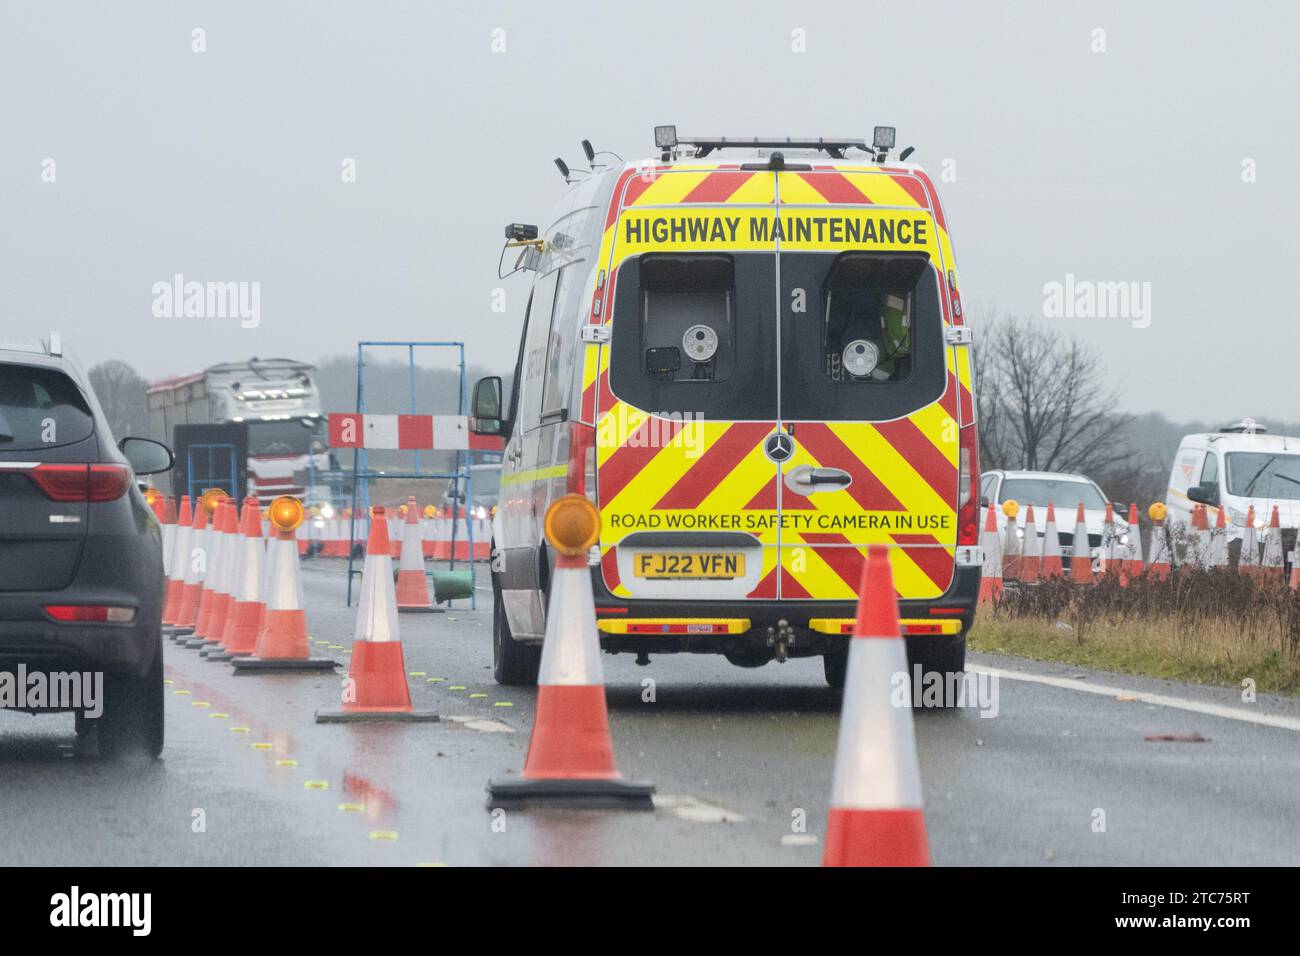 Caméra de sécurité pour les travailleurs routiers Highway Maintenance Van sur l'autoroute du royaume-uni Banque D'Images